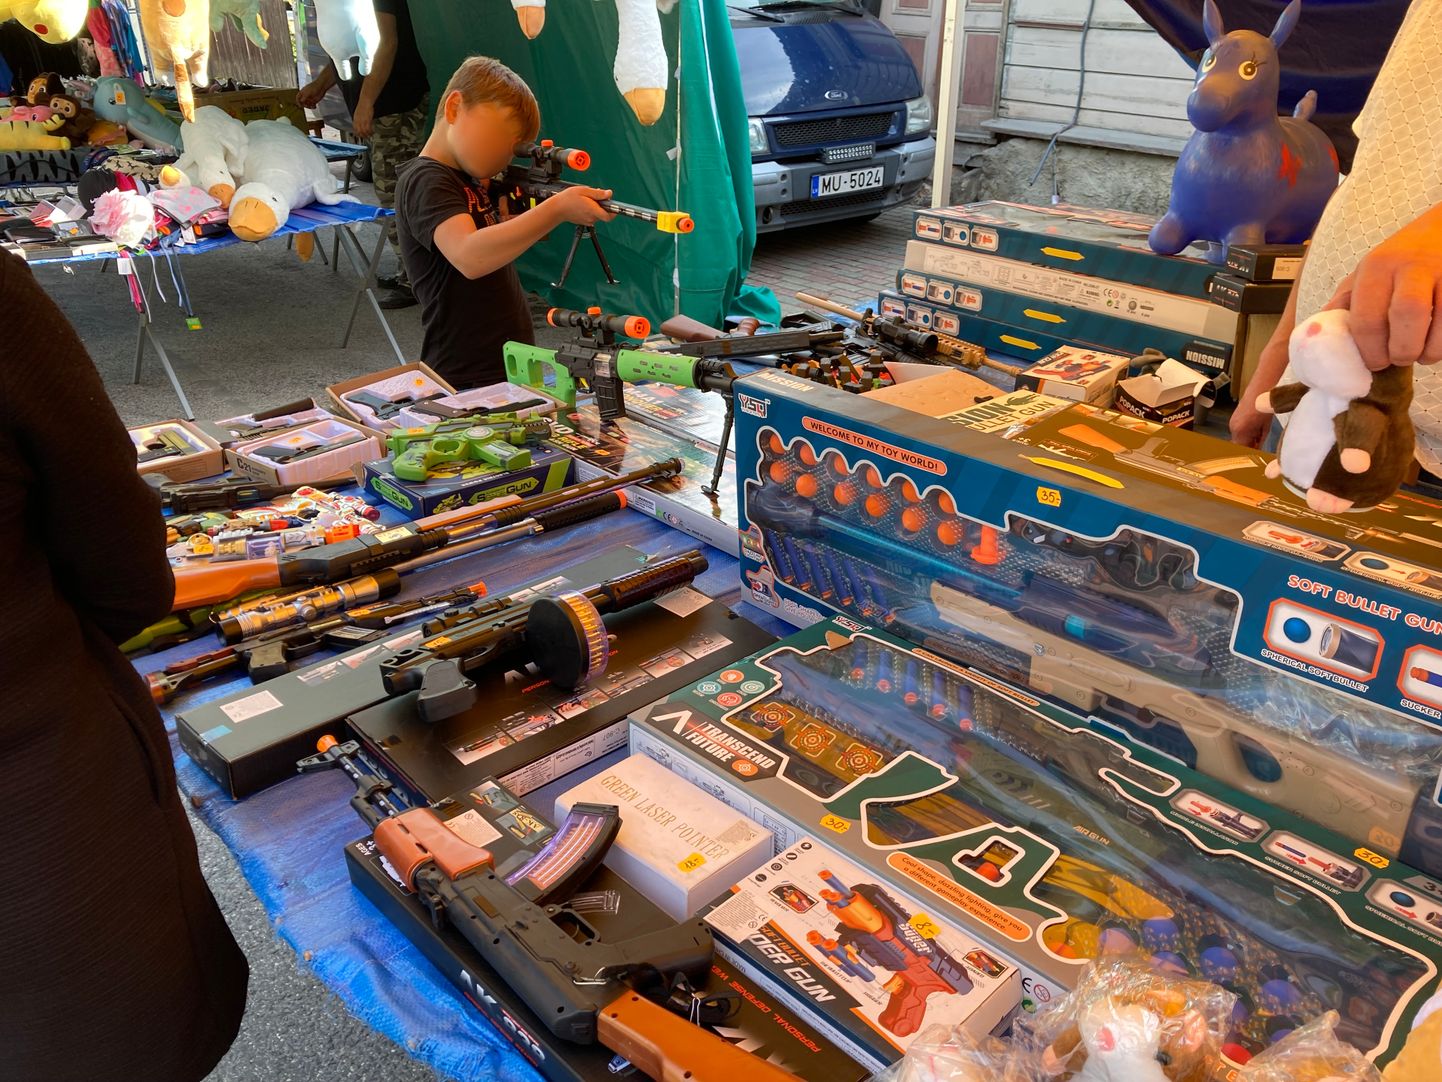 Помимо игрушечных пистолетов, на ярмарке были замечены и ножи, которые по просьбе организаторов быстро исчезли с прилавка.